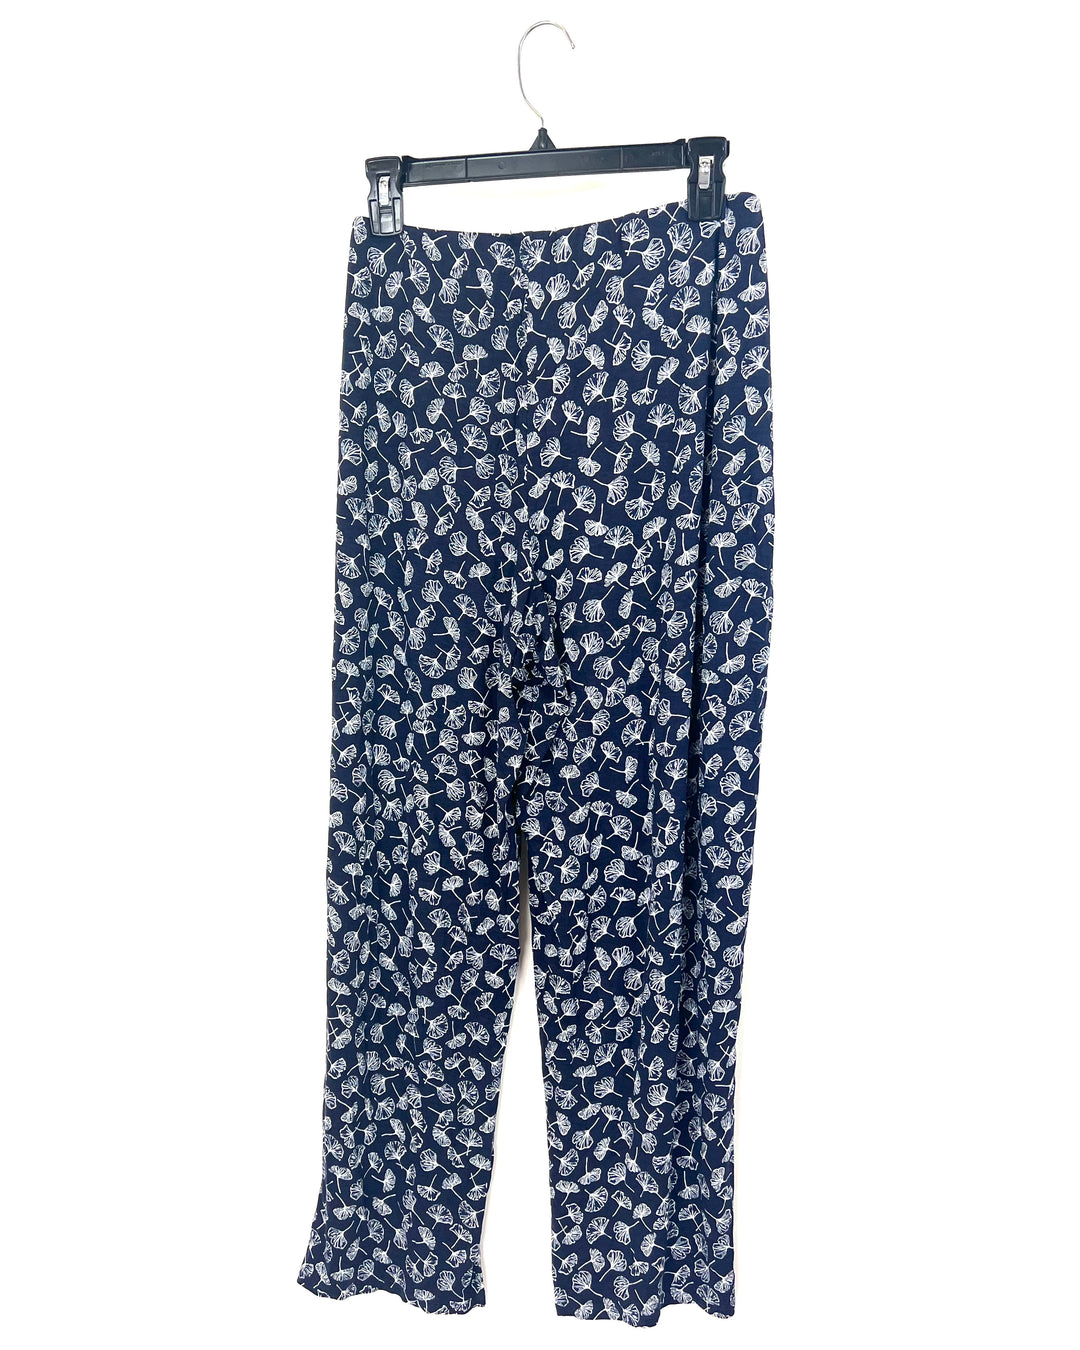 Dark Blue Pajama Set - 1X